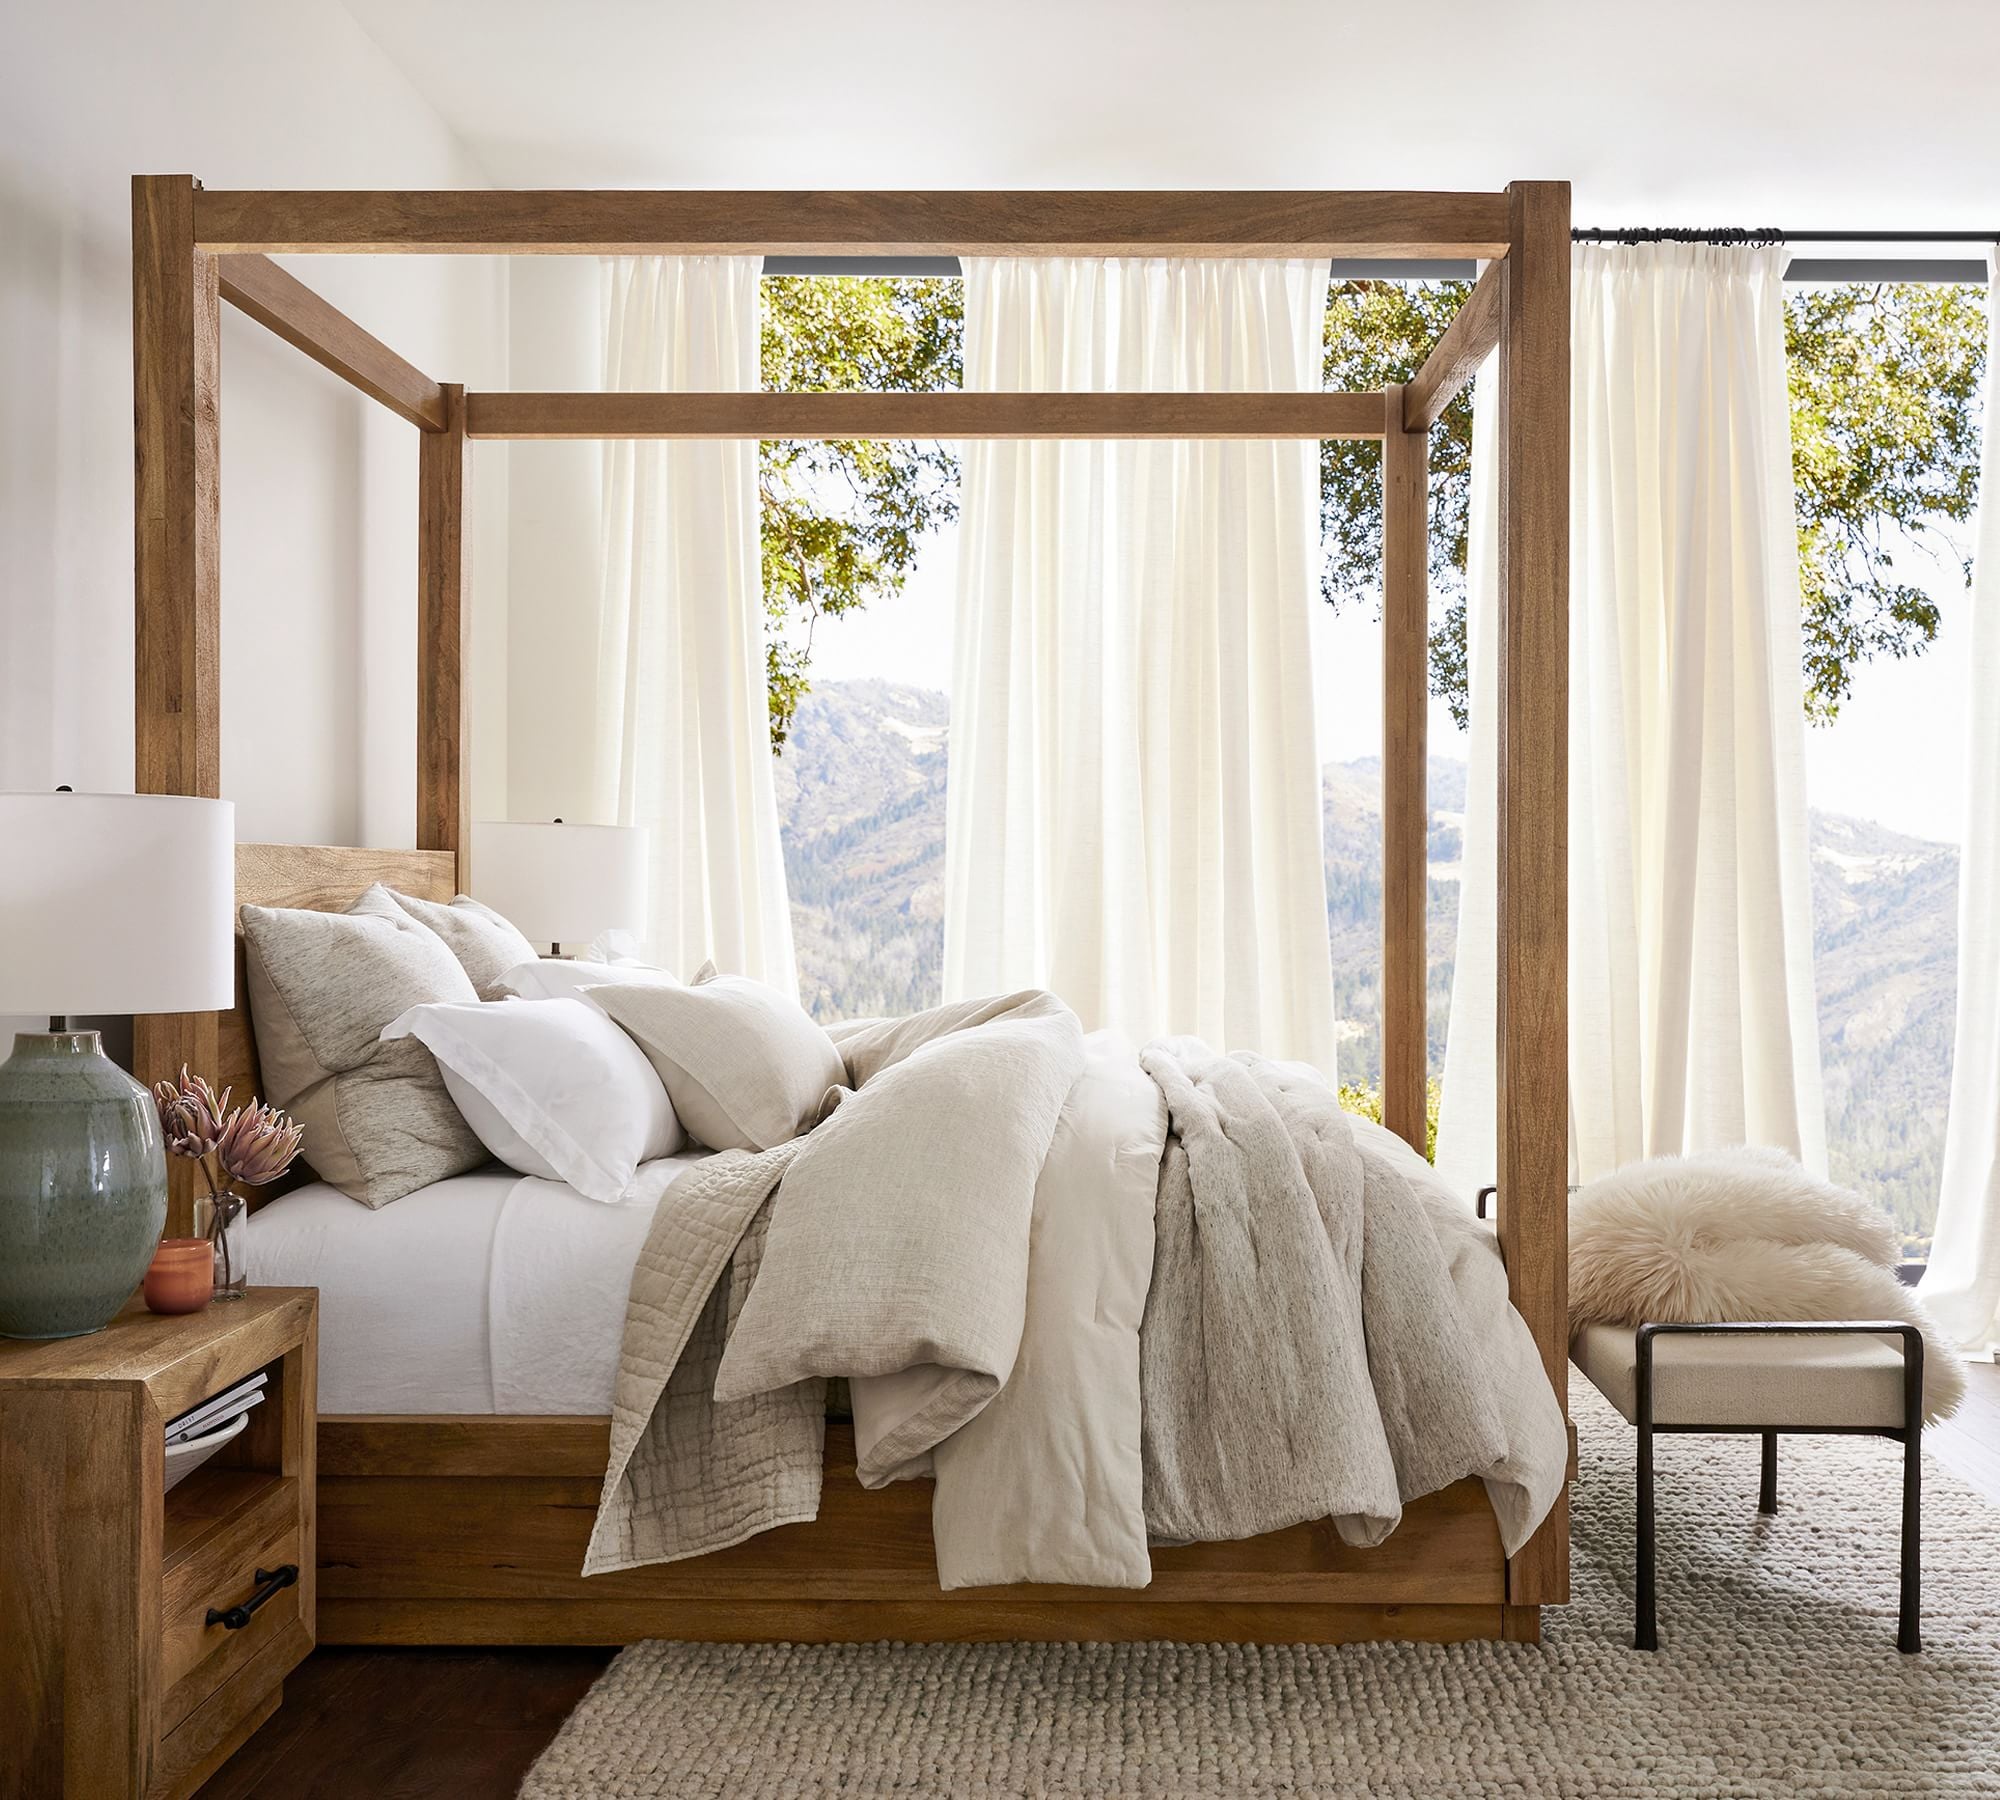 60+ Bed Designs For Bedroom trending in 2023: Wooden, Box